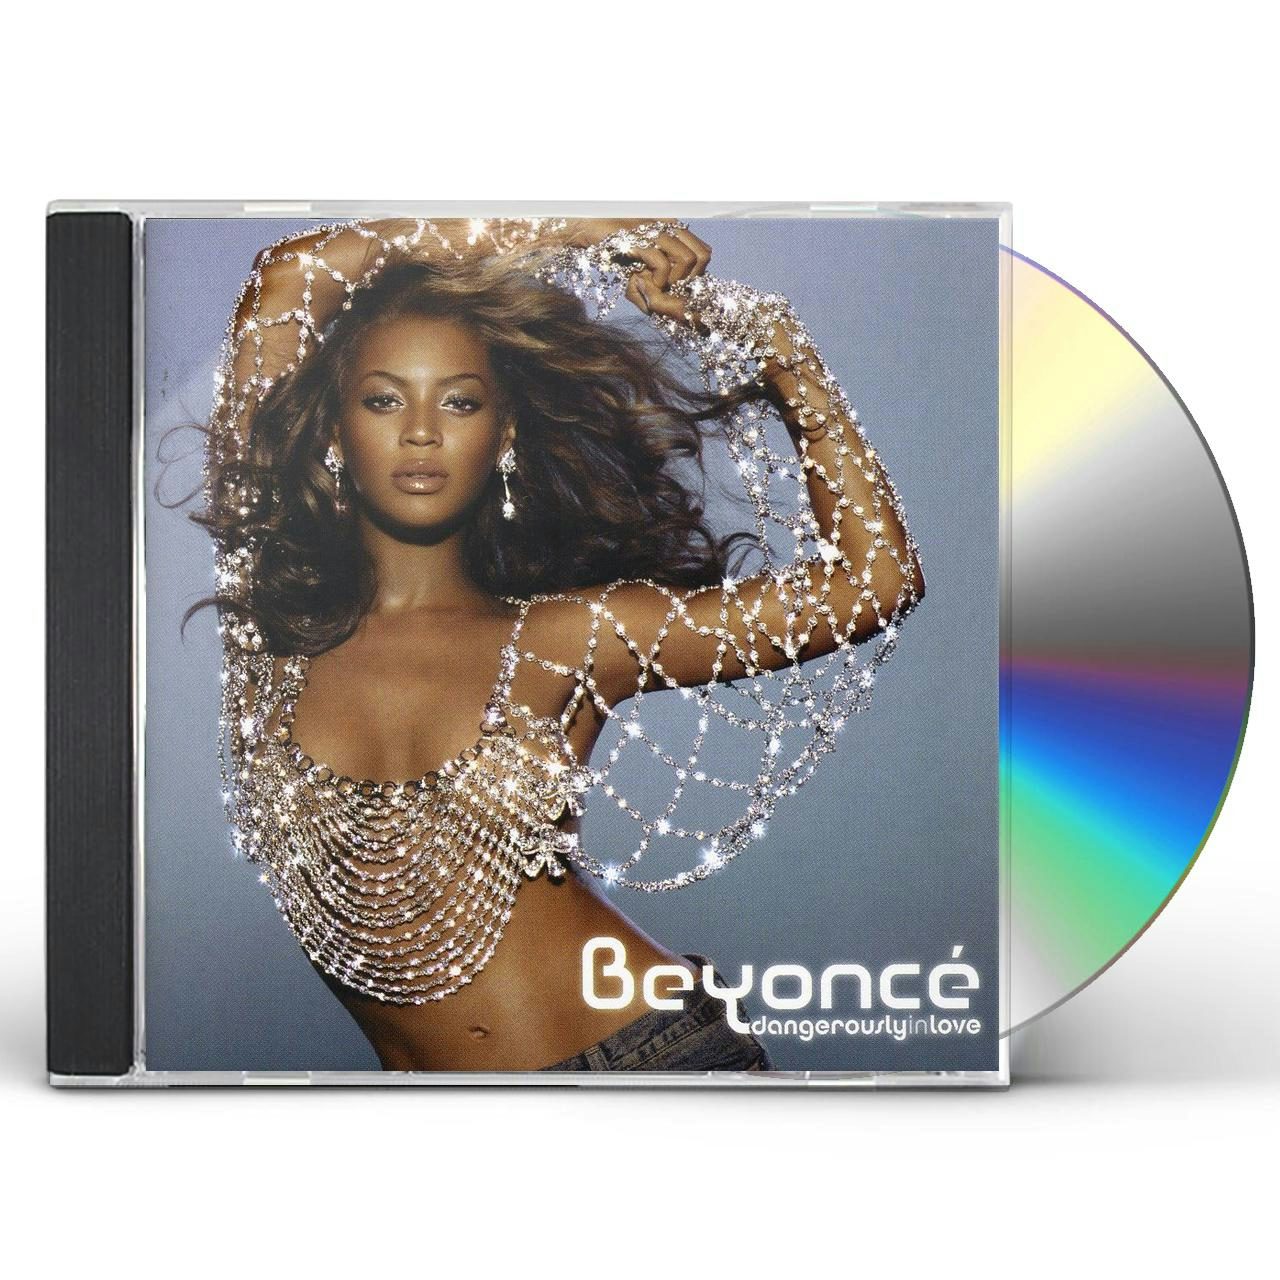 レア盤 Beyonce / dangerously in love 1LP